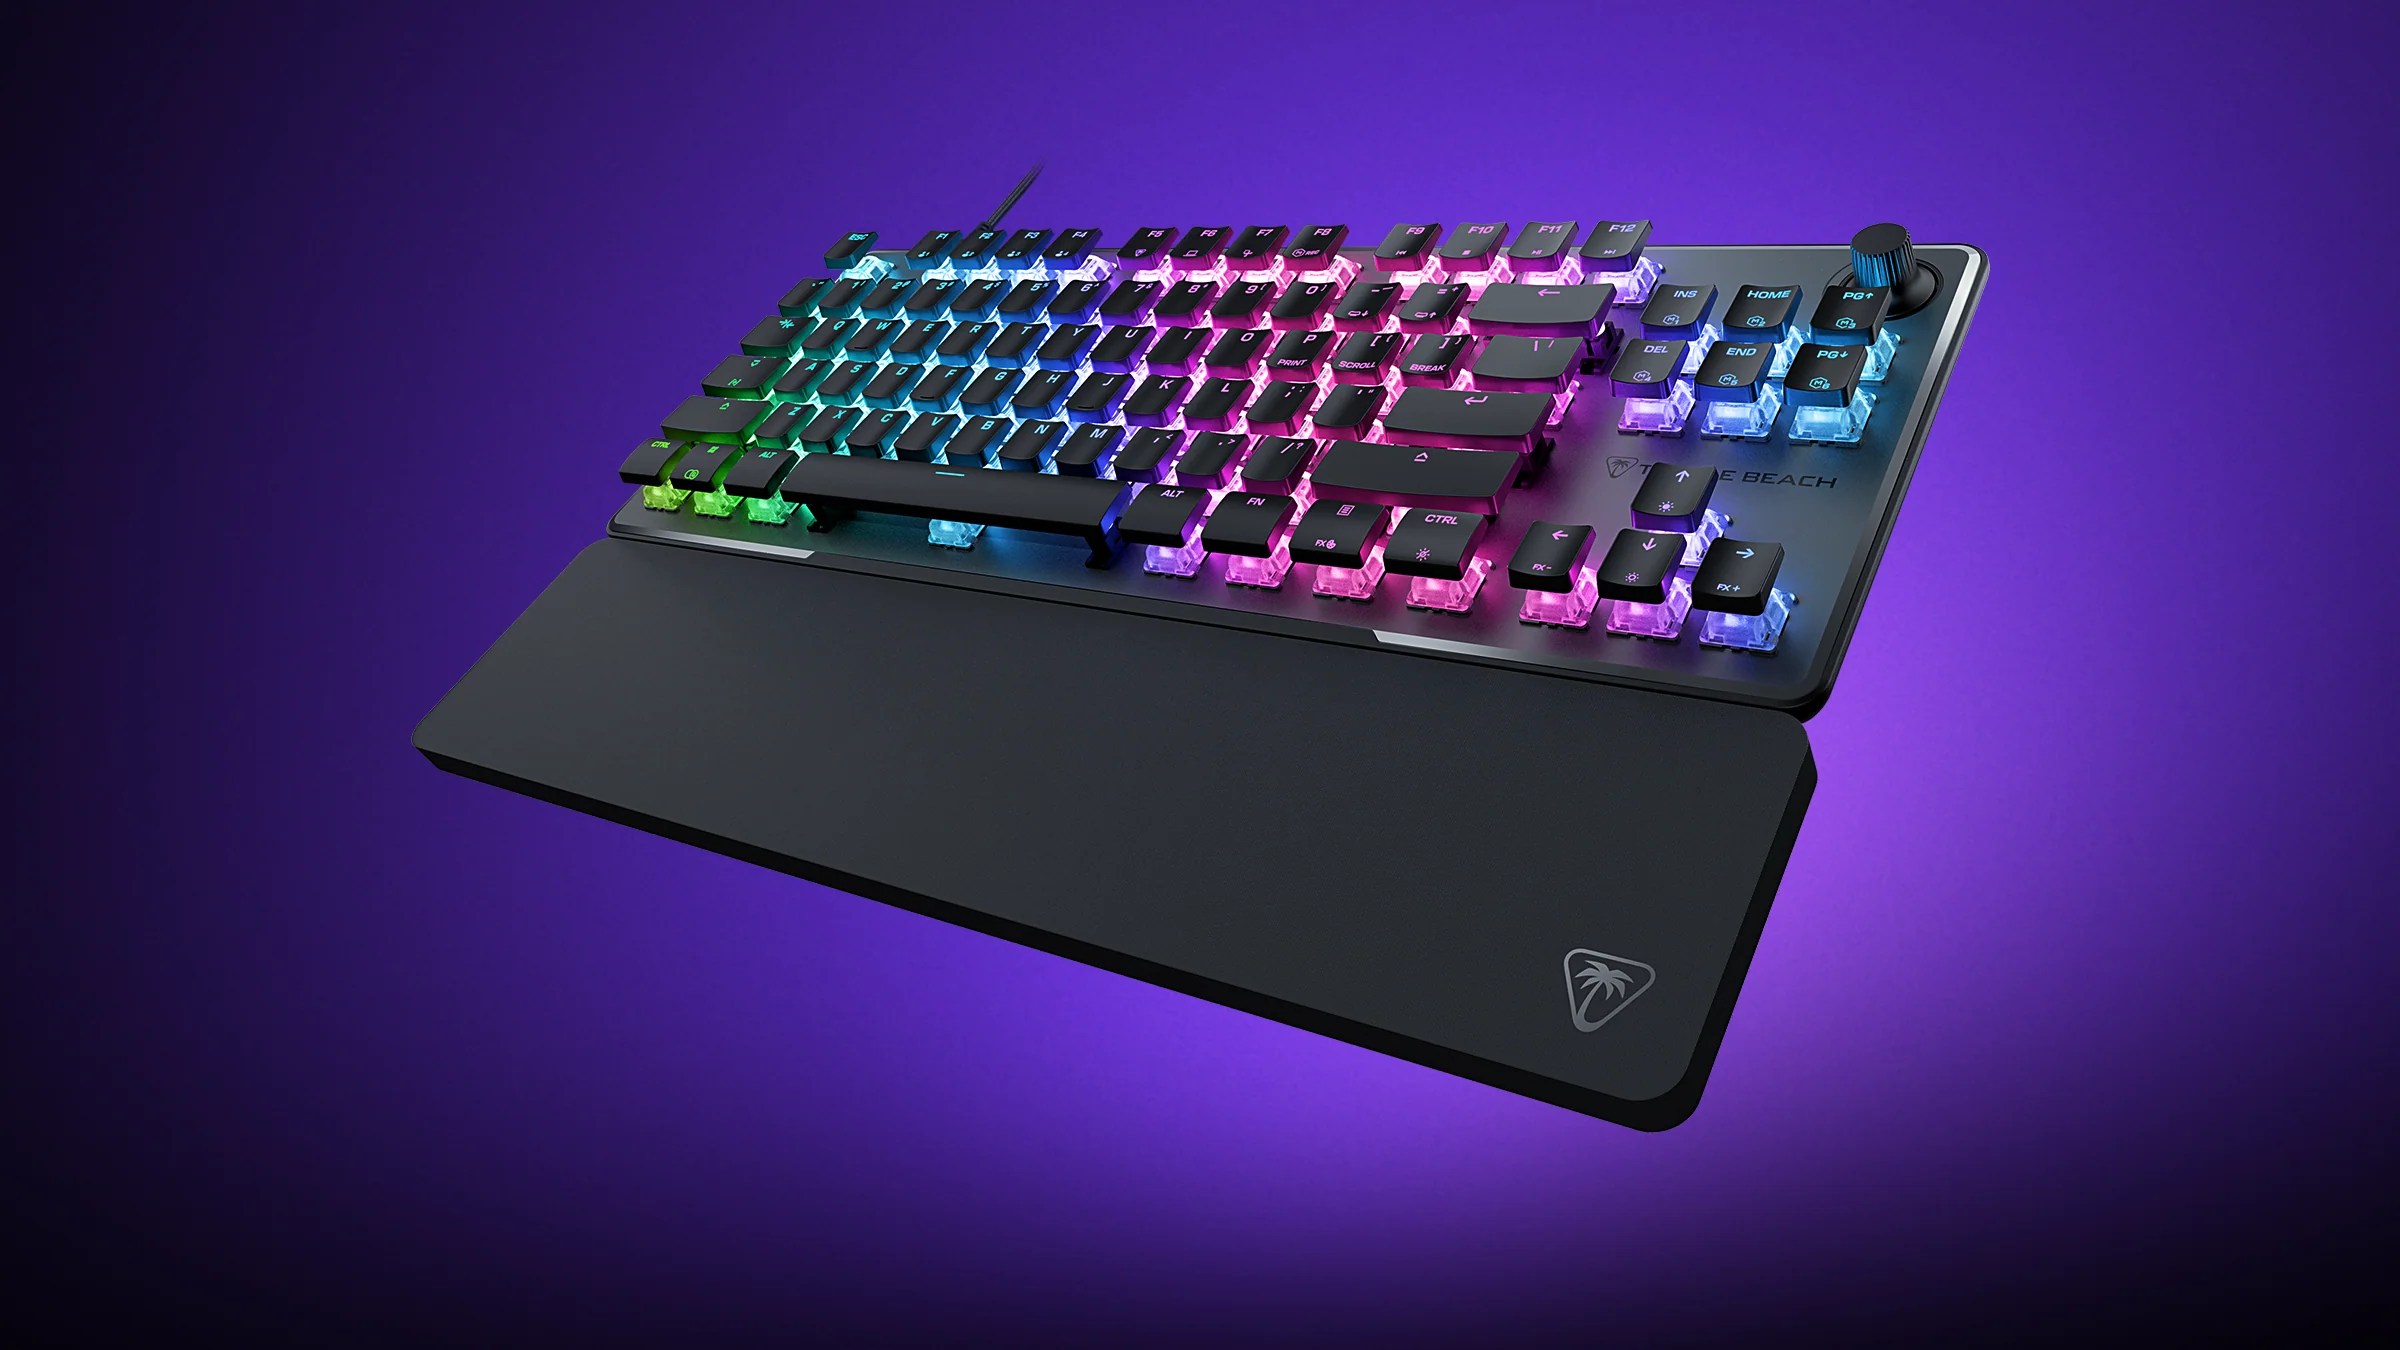 A Vulcan 2 TKL Pro keyboard sits on a purple backdrop.